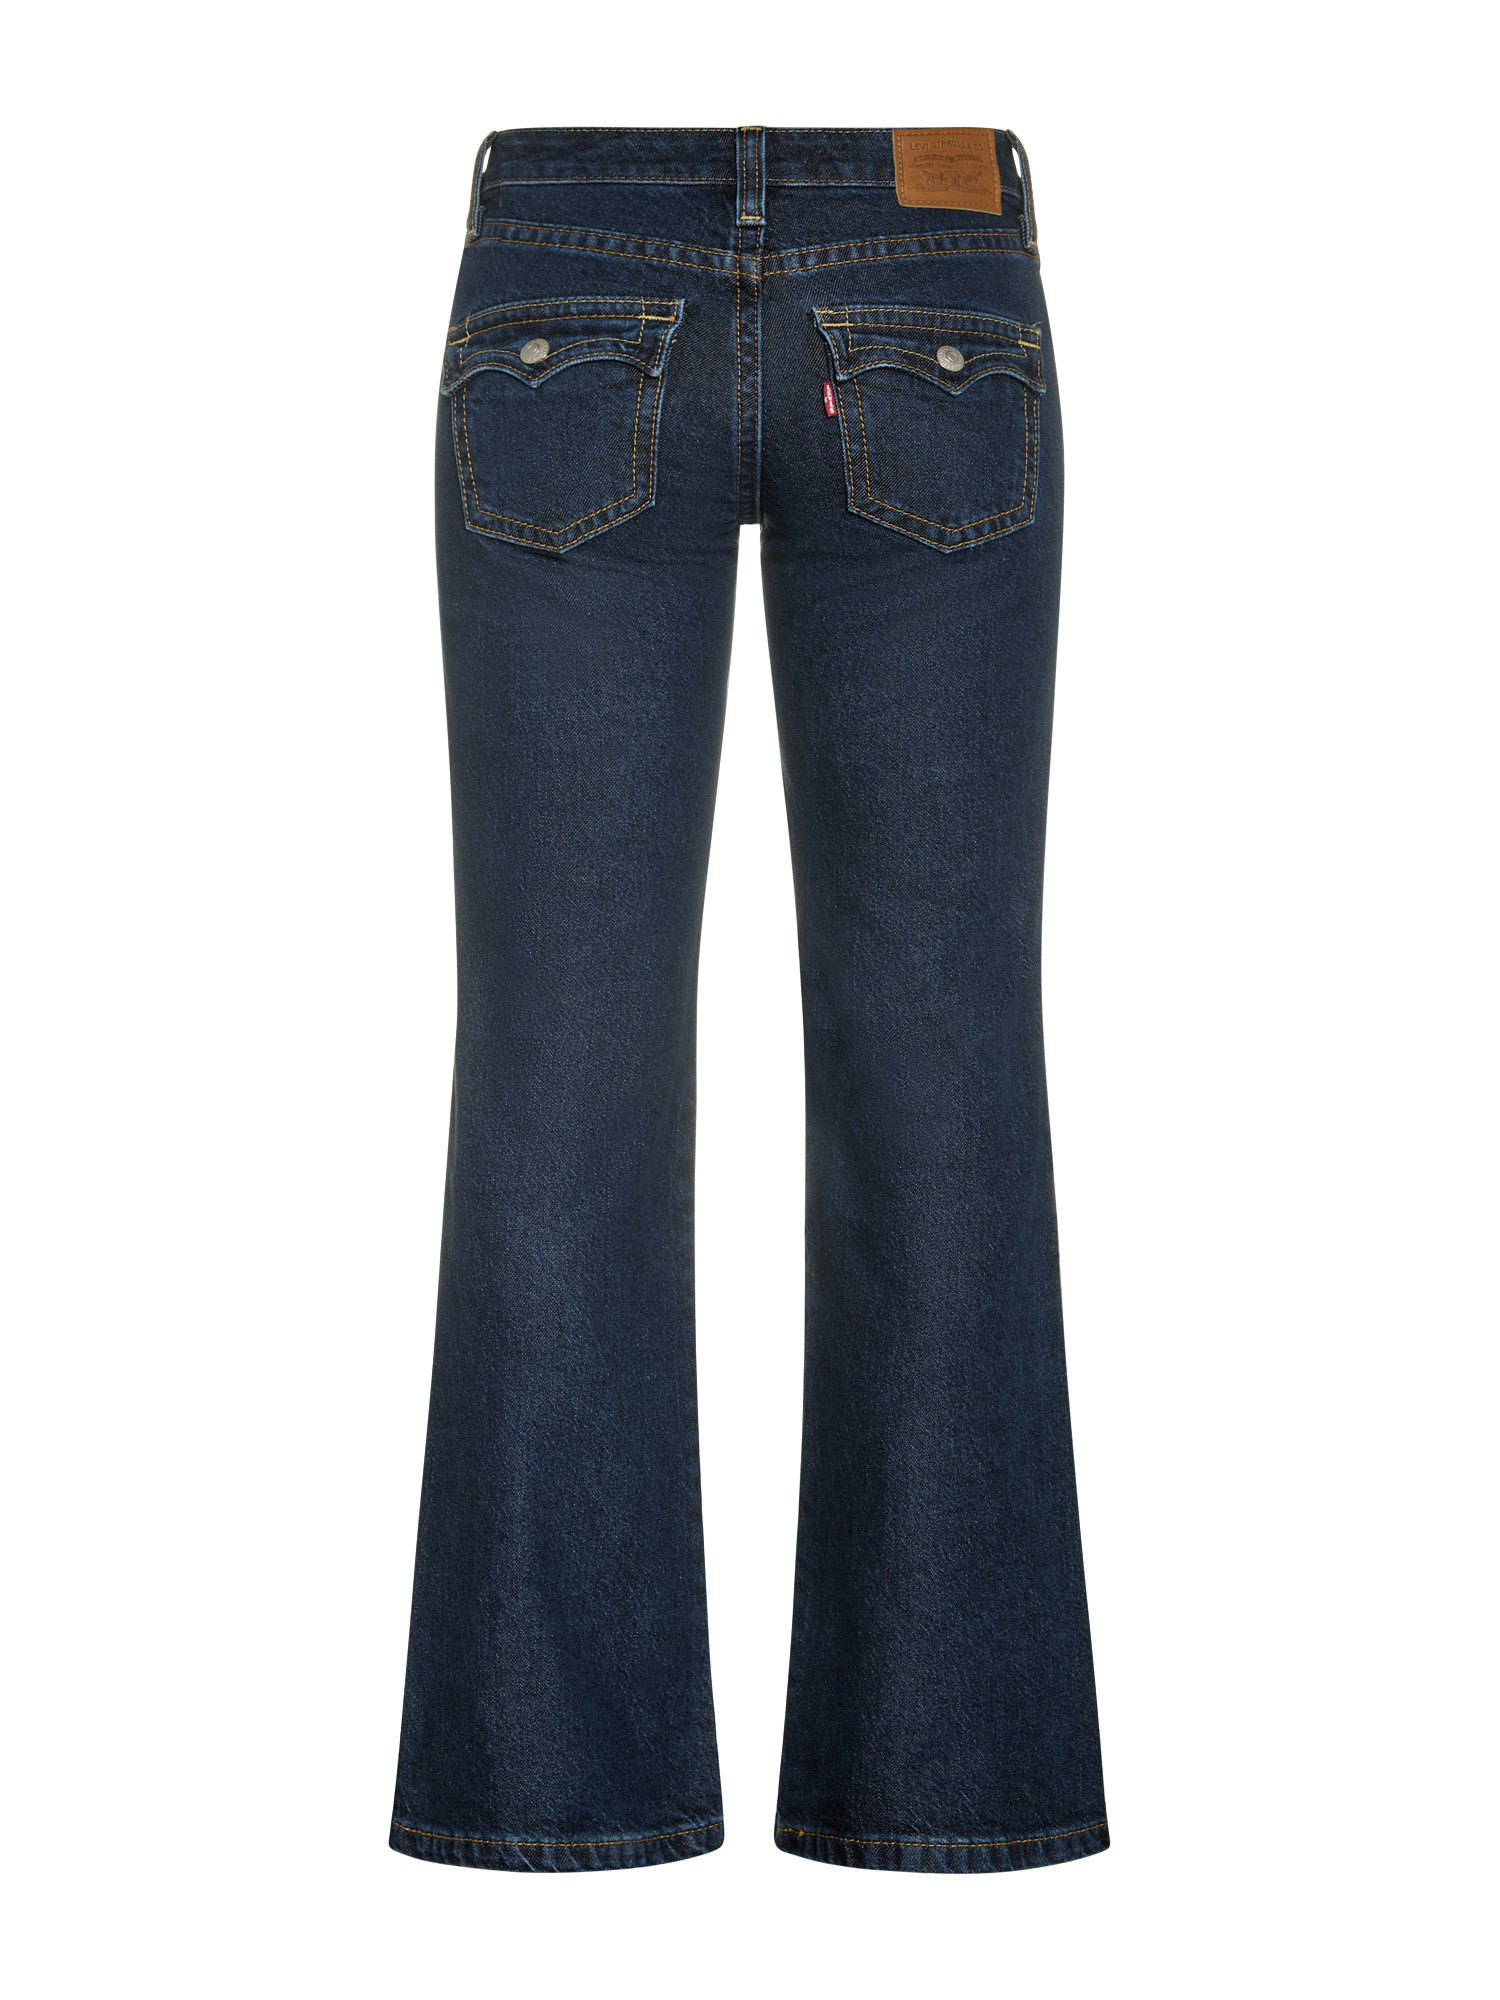 Levi's - Five pocket bootcut jeans, Blue, large image number 1